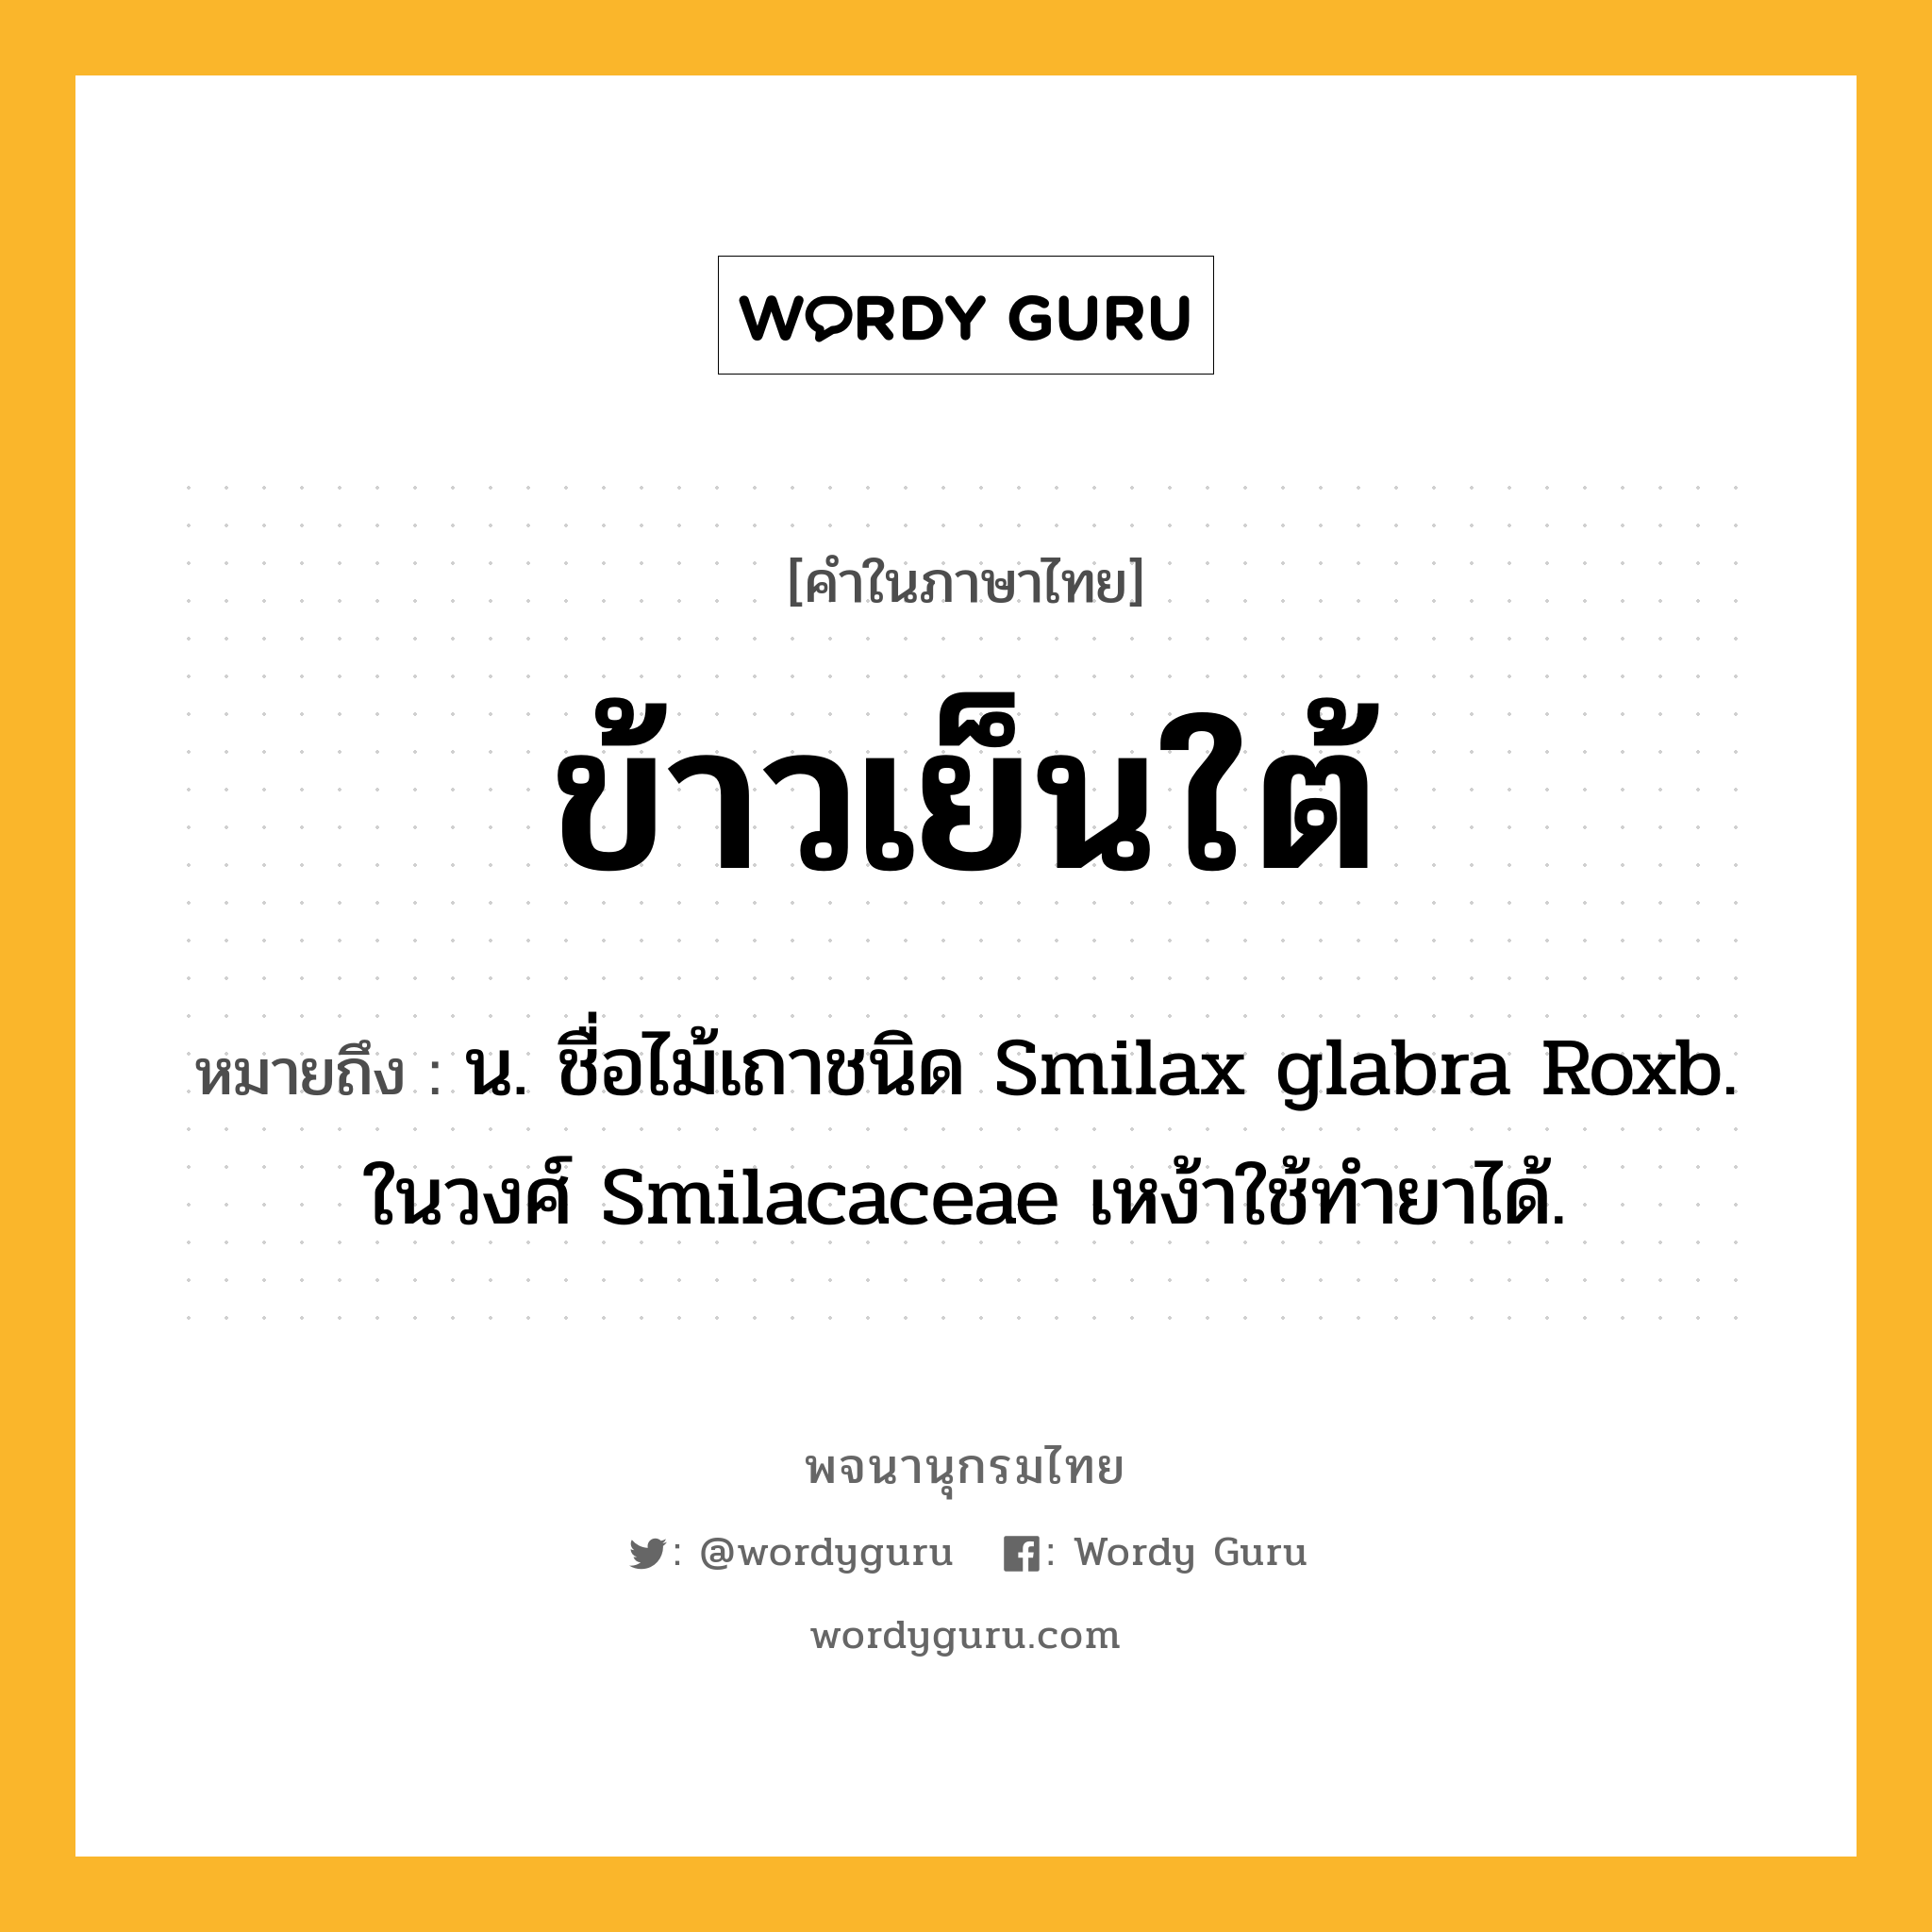 ข้าวเย็นใต้ หมายถึงอะไร?, คำในภาษาไทย ข้าวเย็นใต้ หมายถึง น. ชื่อไม้เถาชนิด Smilax glabra Roxb. ในวงศ์ Smilacaceae เหง้าใช้ทํายาได้.